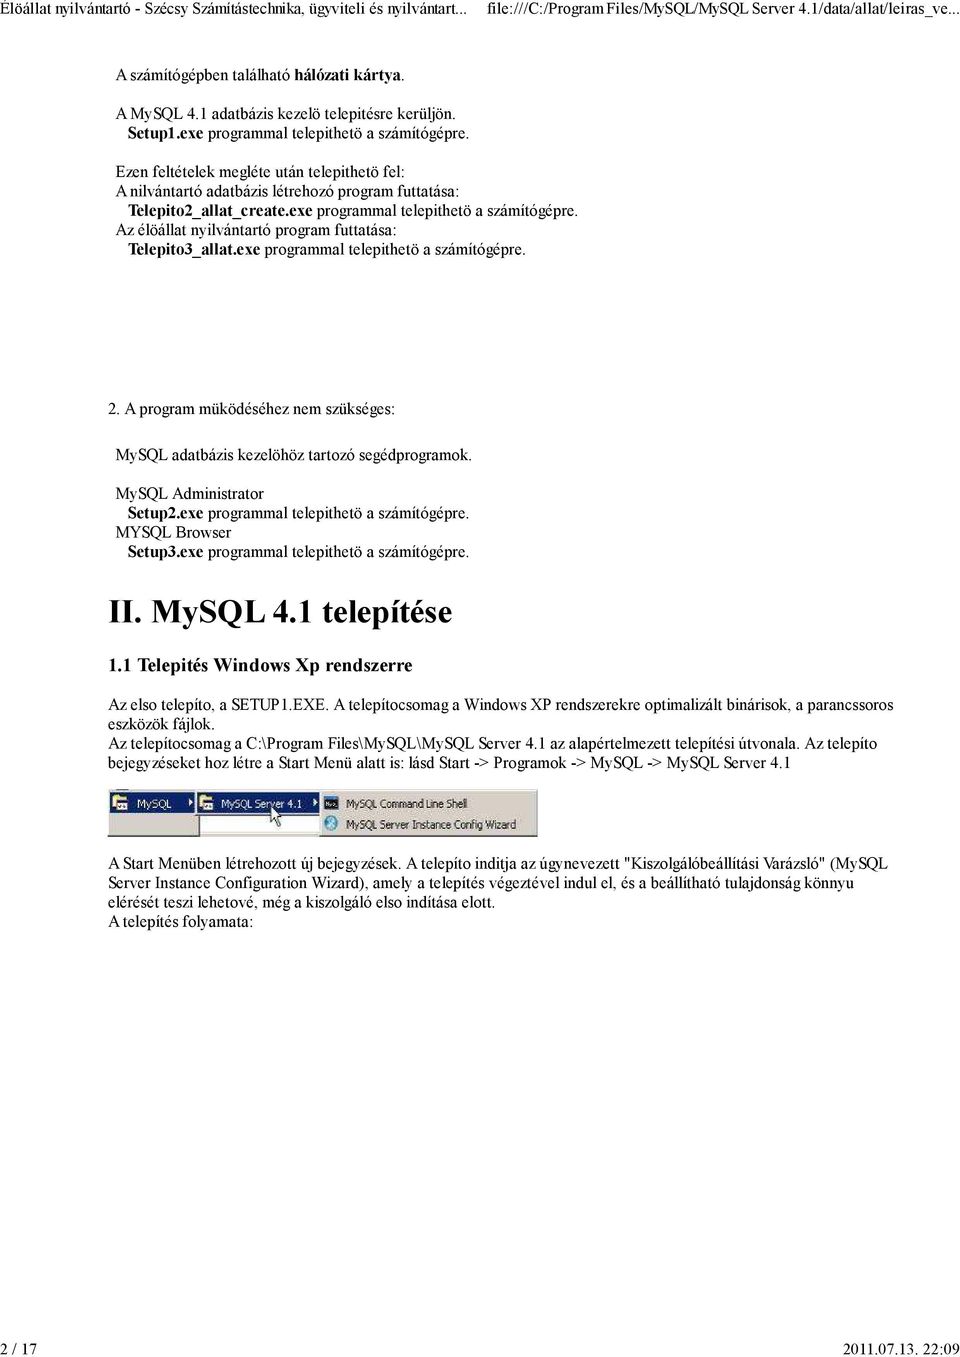 Az élöállat nyilvántartó program futtatása: Telepito3_allat.exe programmal telepithetö a számítógépre. 2. A program müködéséhez nem szükséges: MySQL adatbázis kezelöhöz tartozó segédprogramok.